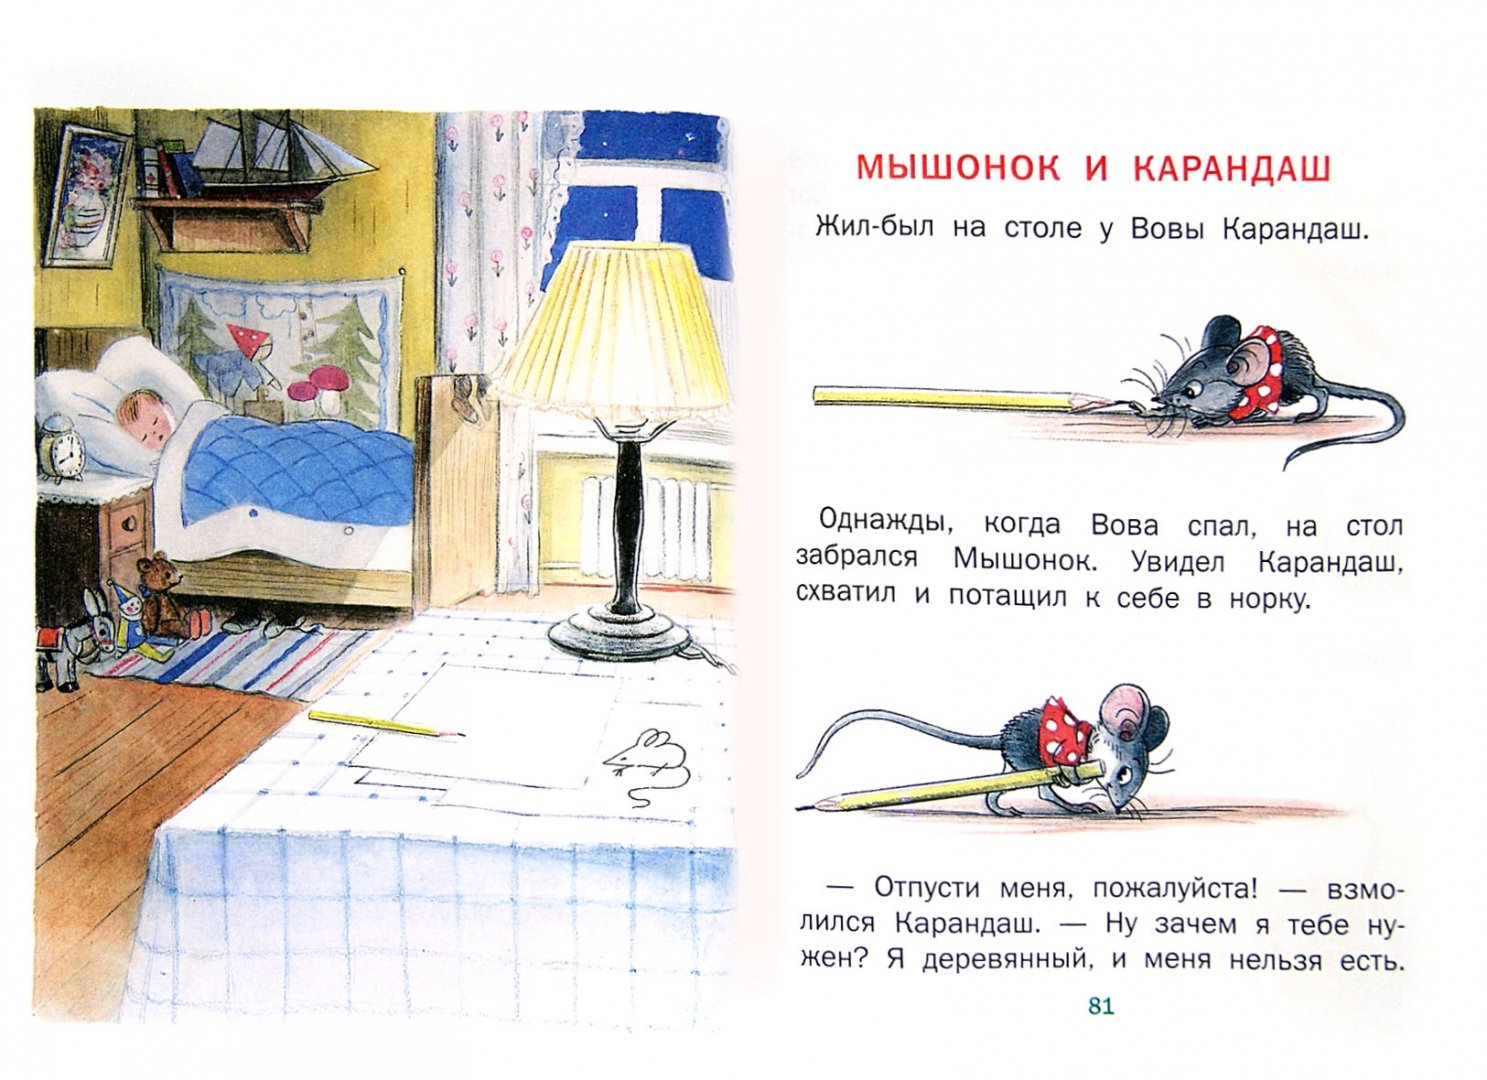 Жили были карандаши читать. Сутеев мышонок и карандаш. Придумать сказку про Вову карандаш и мышонка.